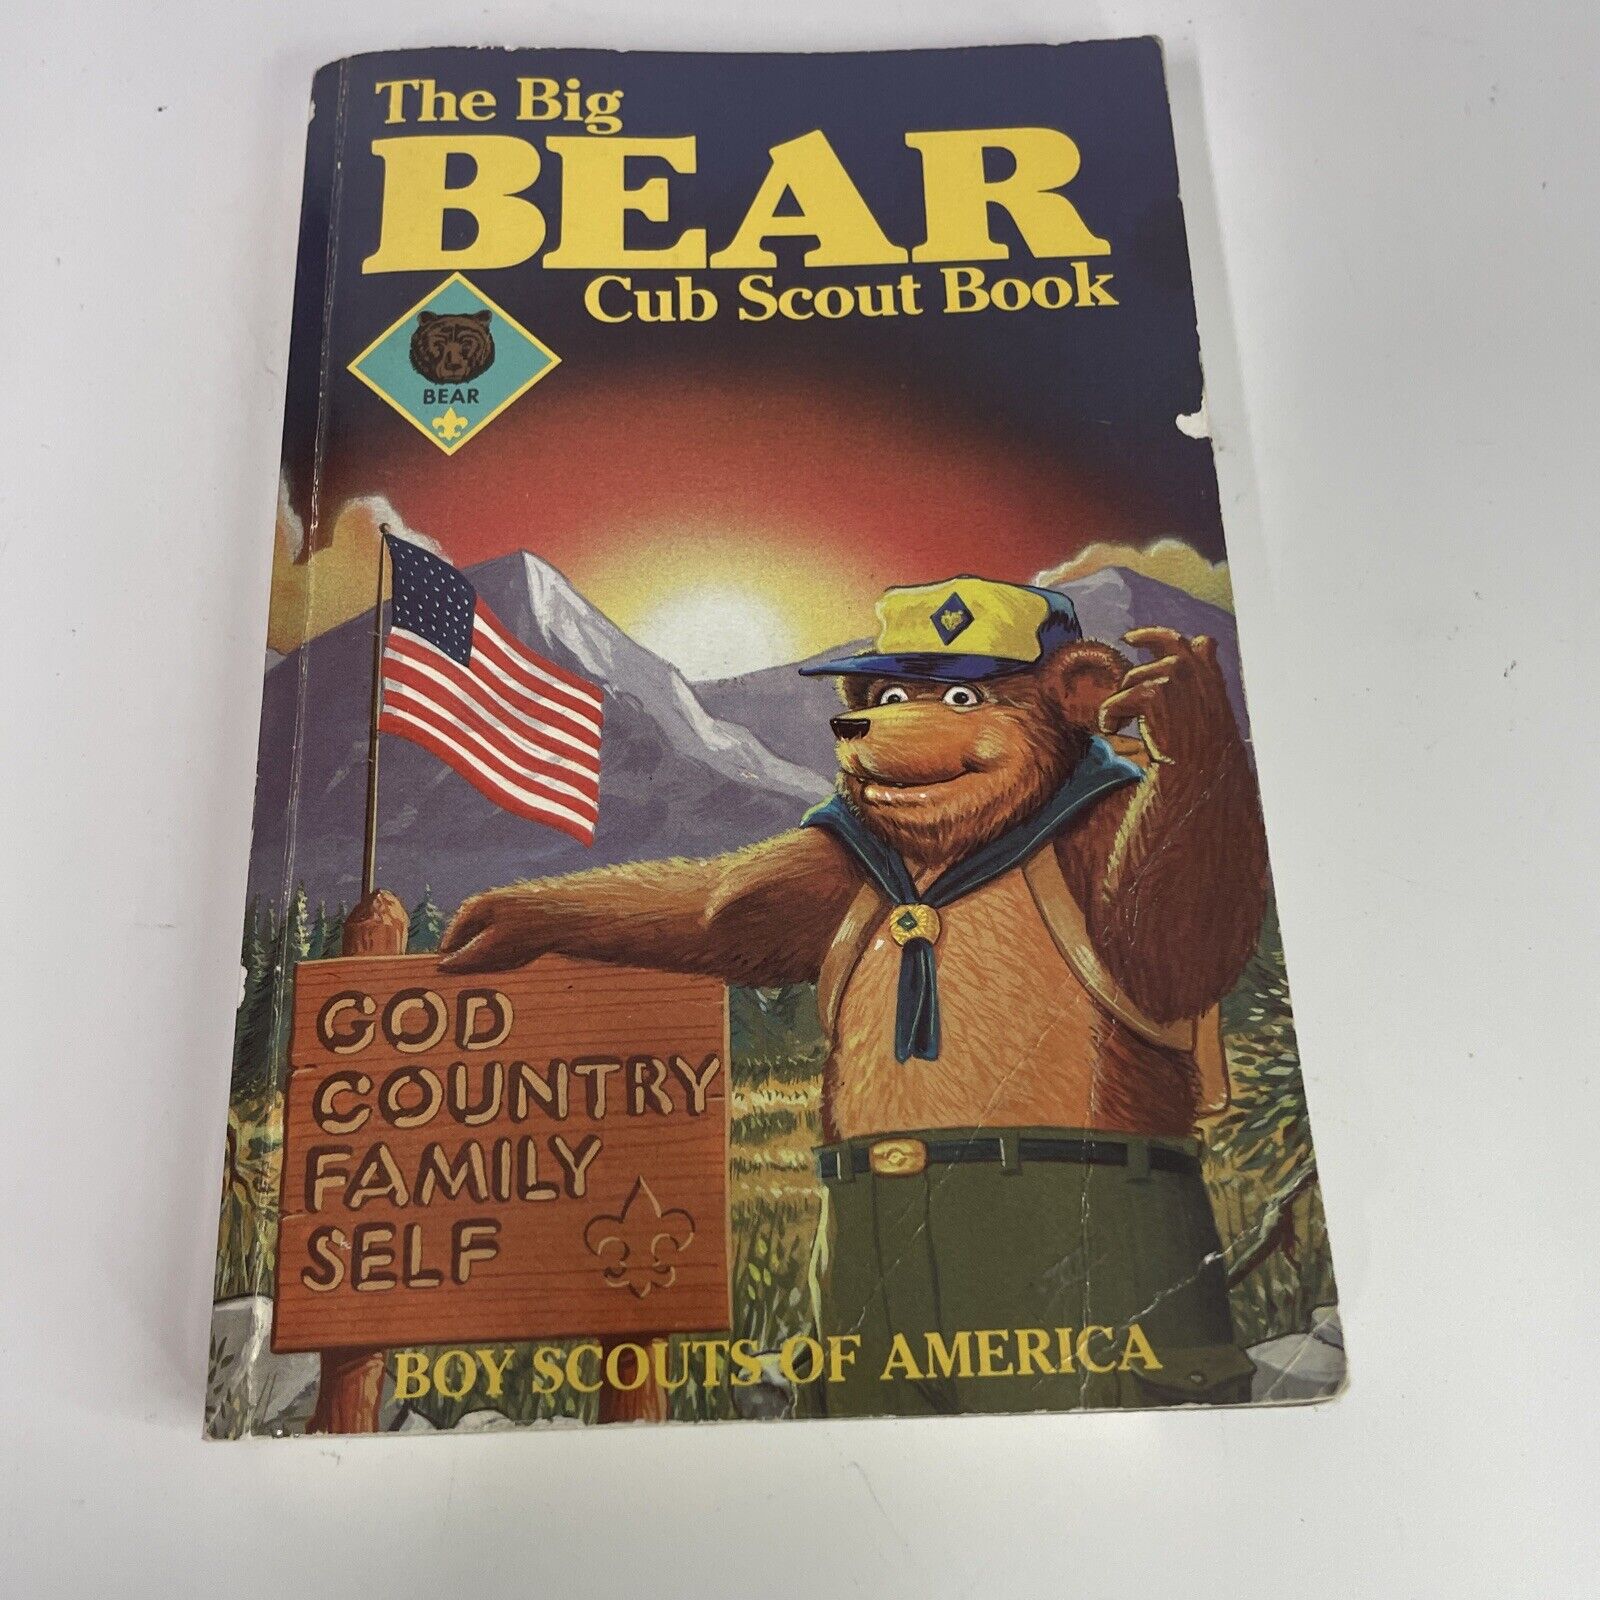 The Big Bear Cub Scout Book - Boy Scouts of America -1995. 730176332284